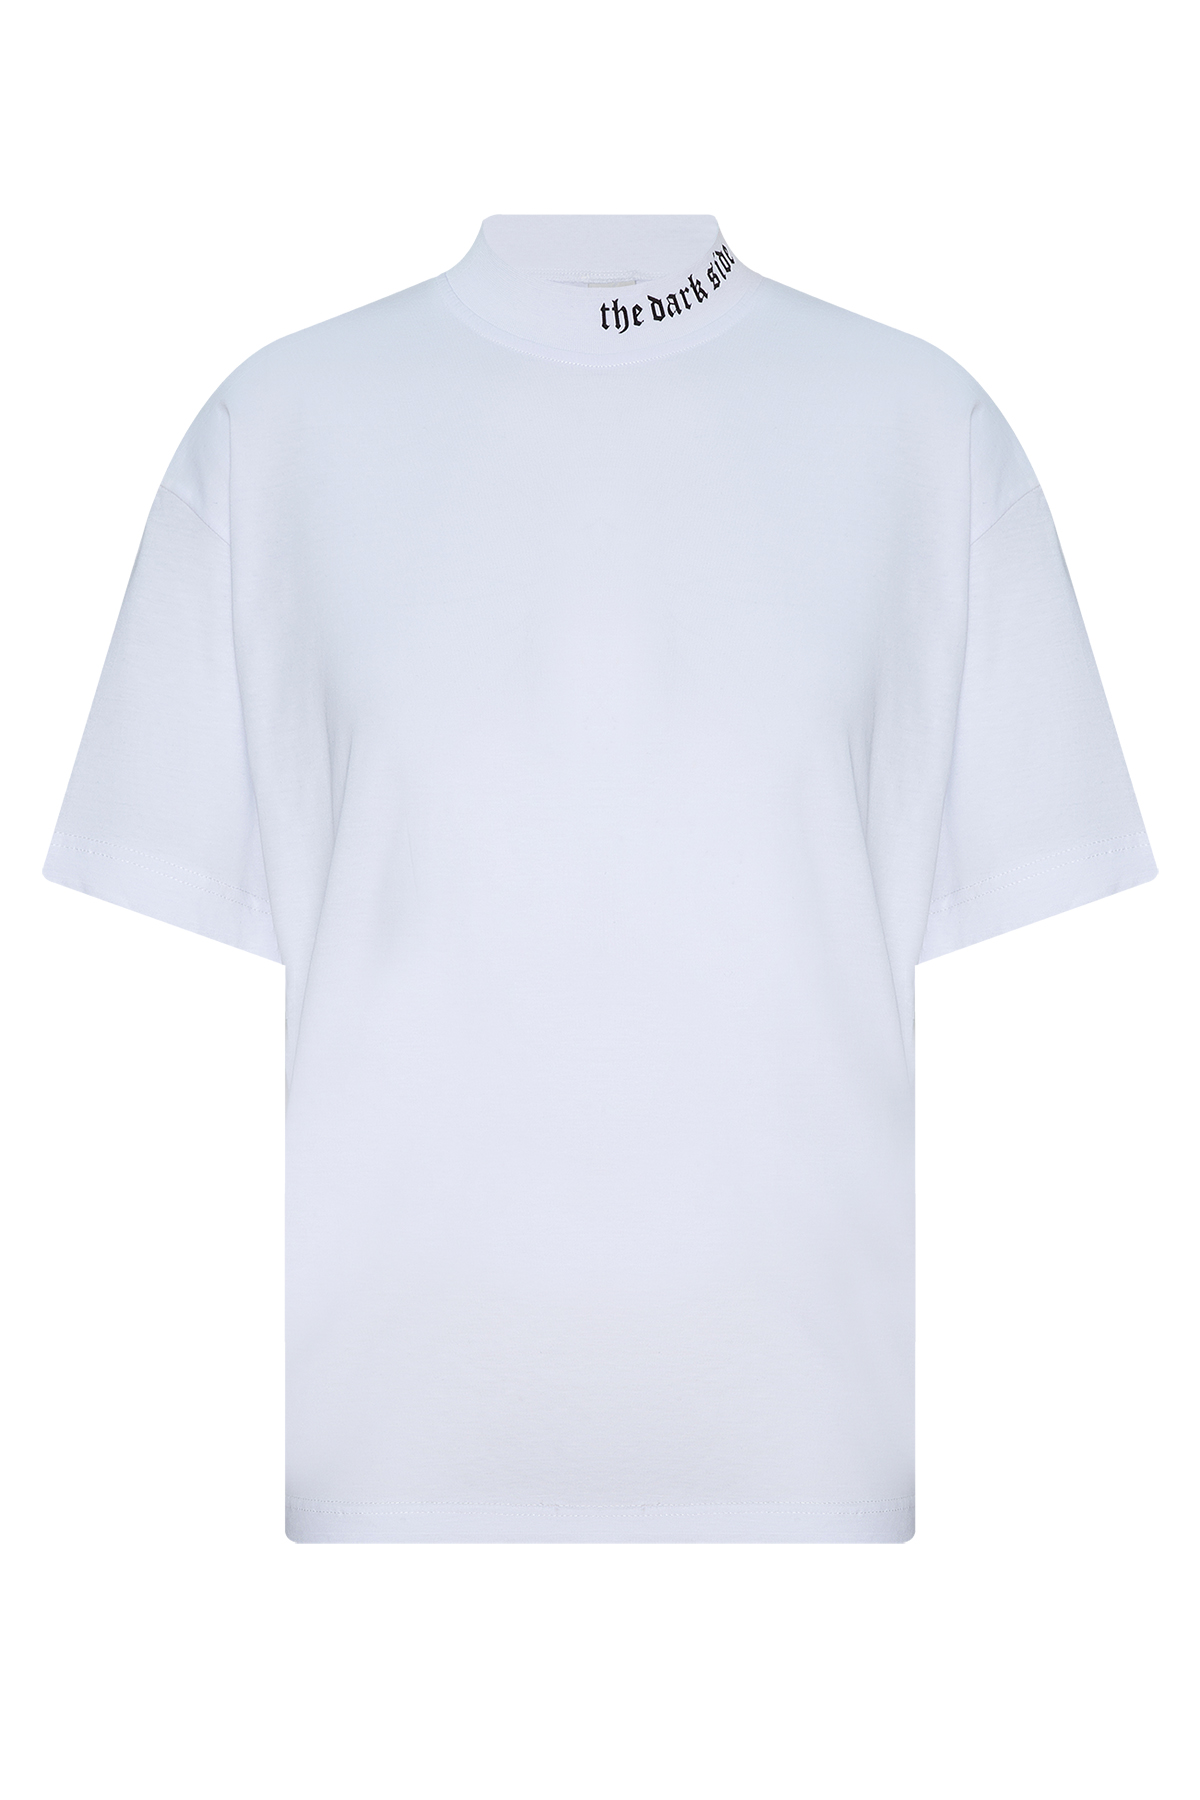 Beyaz Ribanalı & Yazı Detaylı Oversize T-Shirt 2YXE2-45987-01